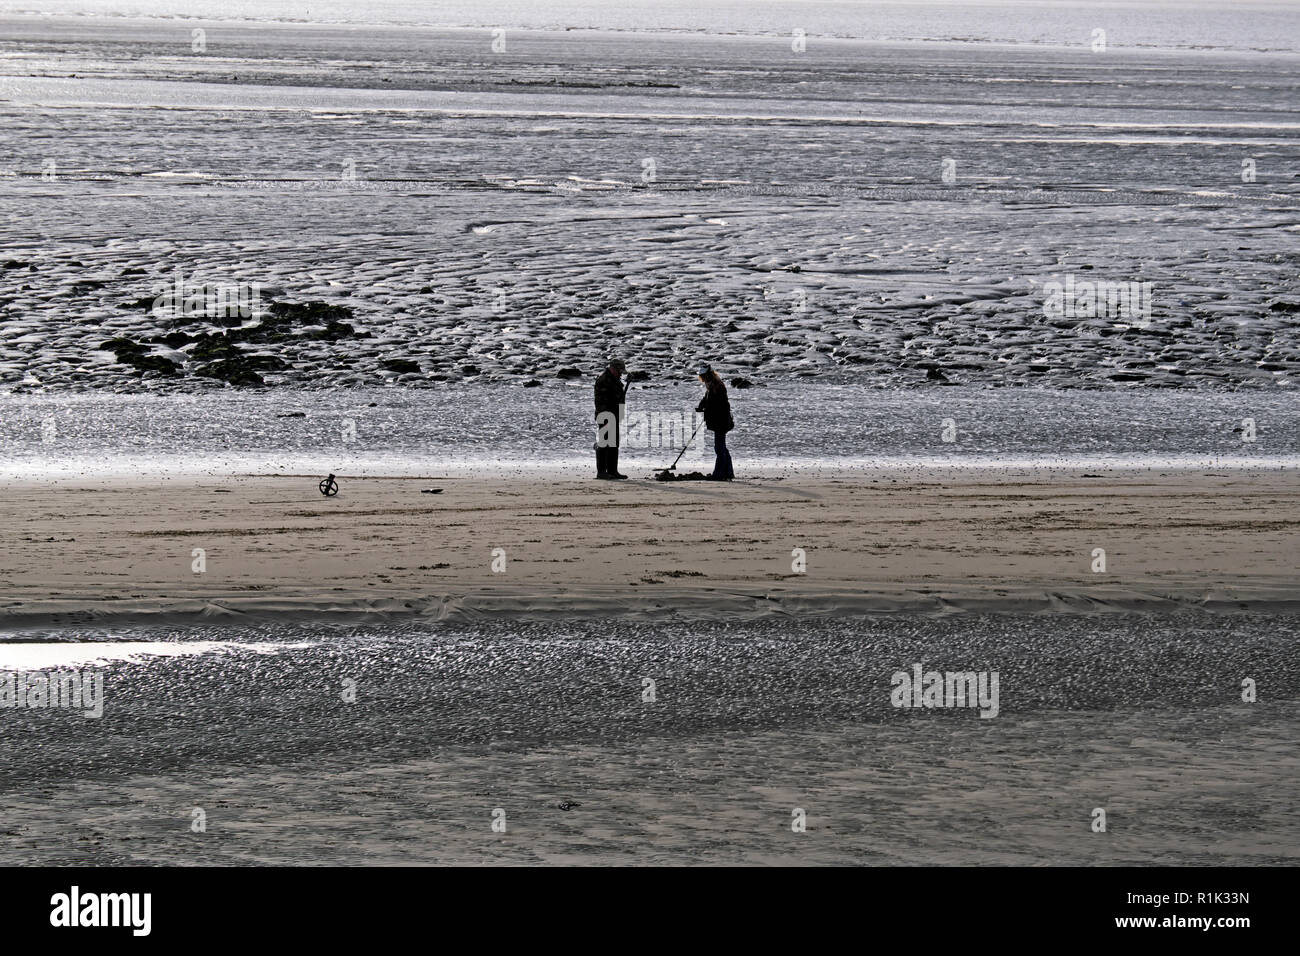 Weston-super-Mare, Royaume-Uni. 13 novembre, 2018. Météo France : sur un après-midi nuageux avec des intervalles ensoleillés, de détecteurs de métaux recherchez la plage. Keith Ramsey/Alamy Live News Banque D'Images